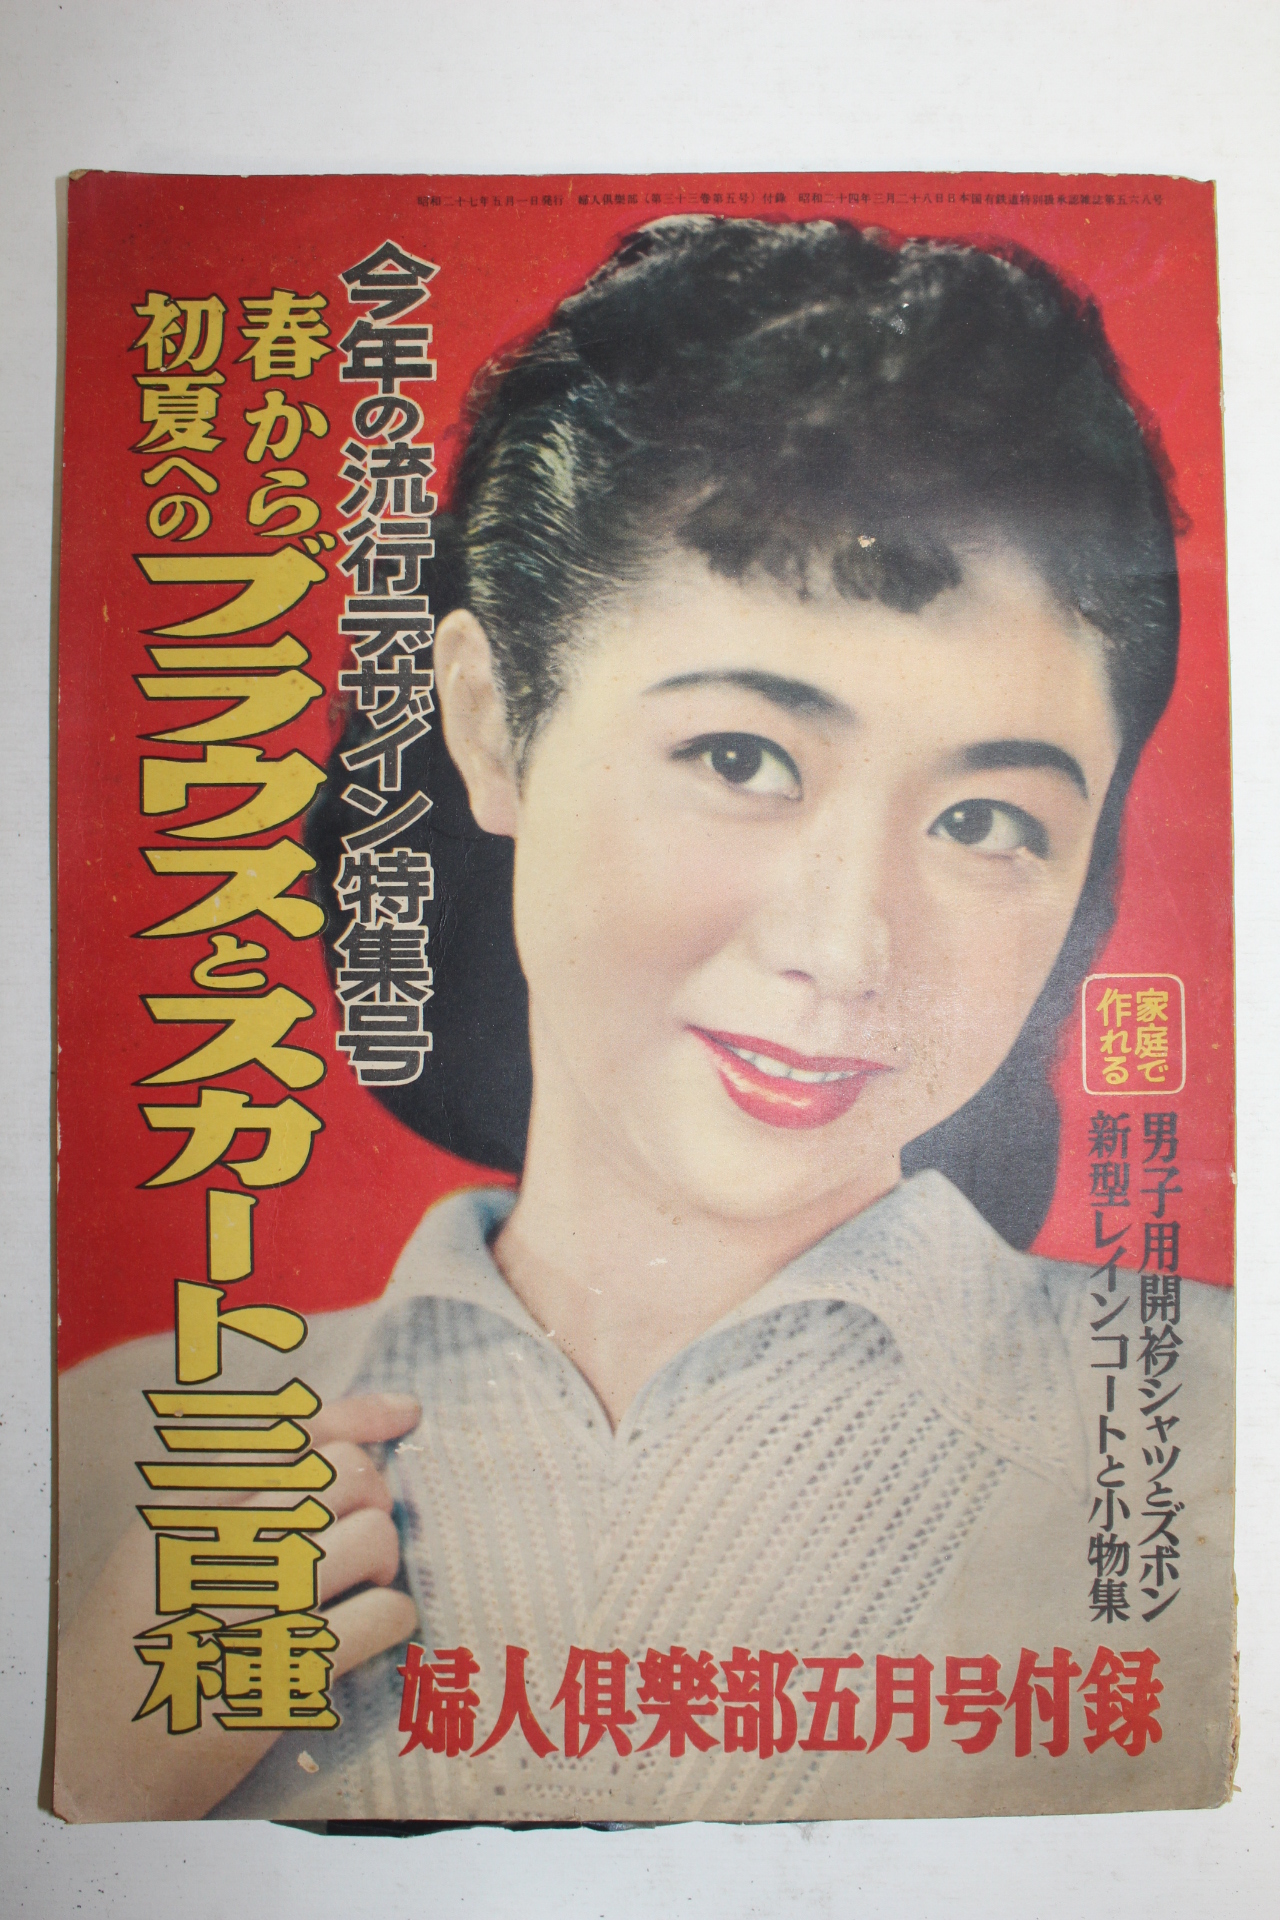 1952년(소화27년) 일본간행 부인구락부 5월호 부록